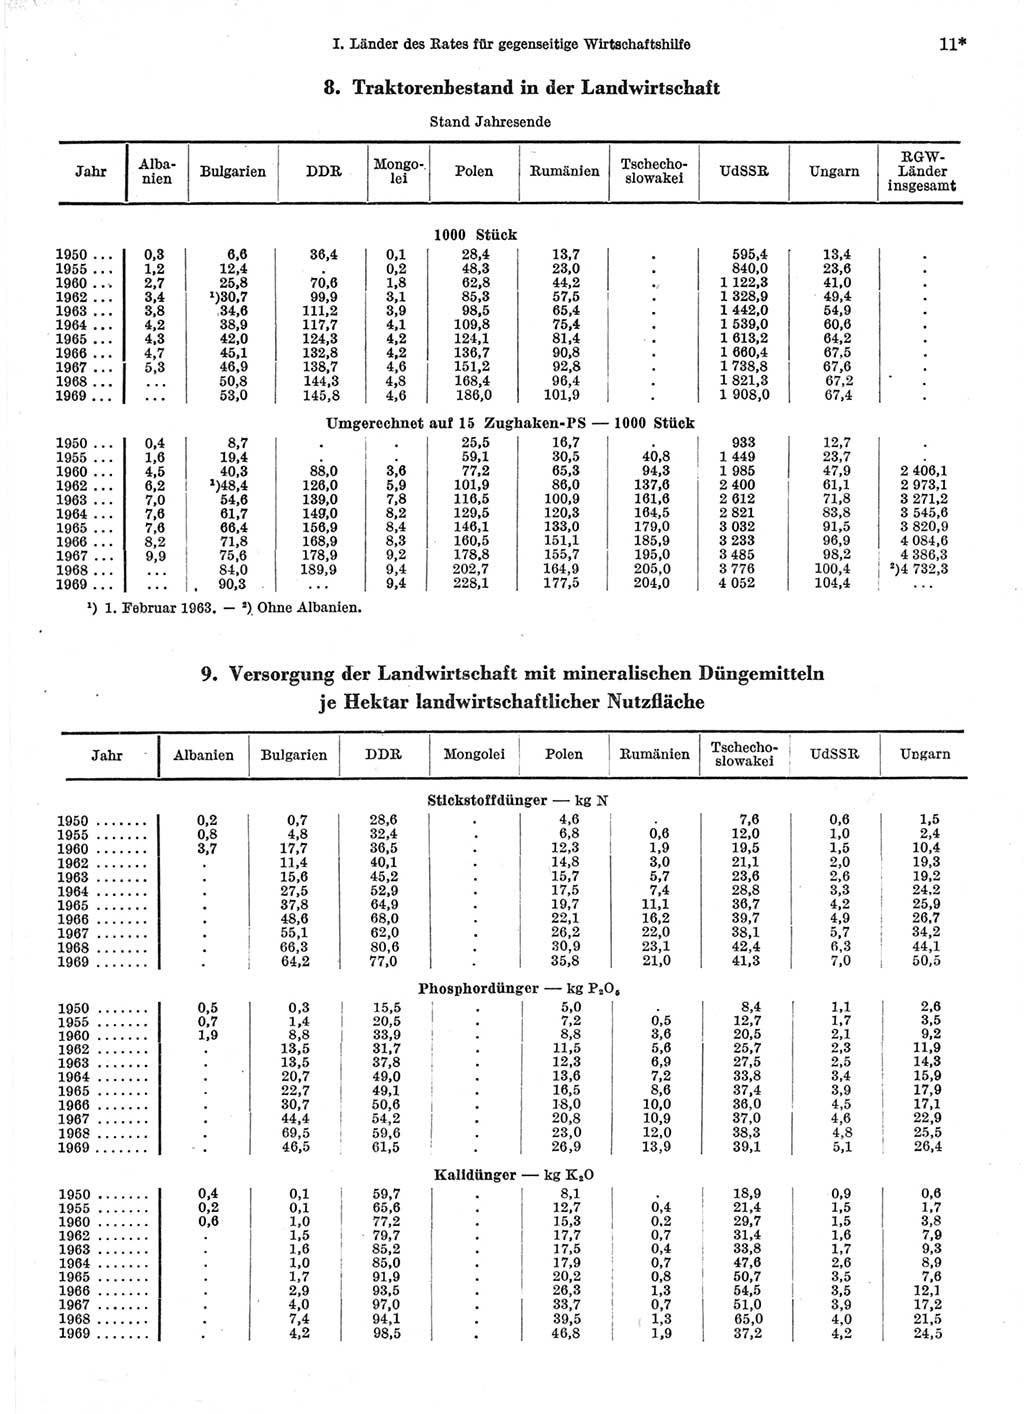 Statistisches Jahrbuch der Deutschen Demokratischen Republik (DDR) 1971, Seite 11 (Stat. Jb. DDR 1971, S. 11)